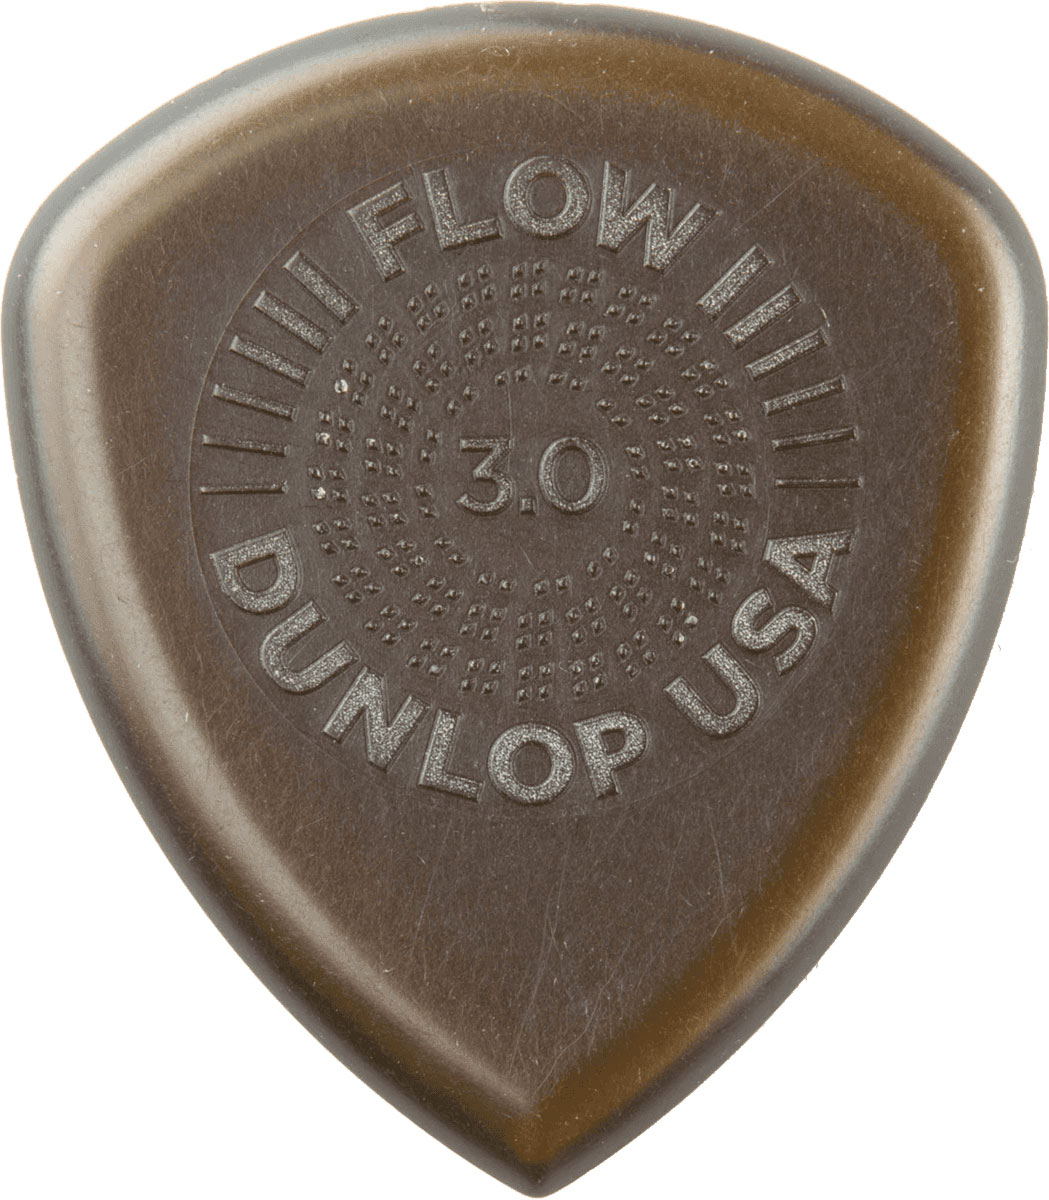 JIM DUNLOP FLOW JUMBO GRIP 3,00MM PACK DE 12